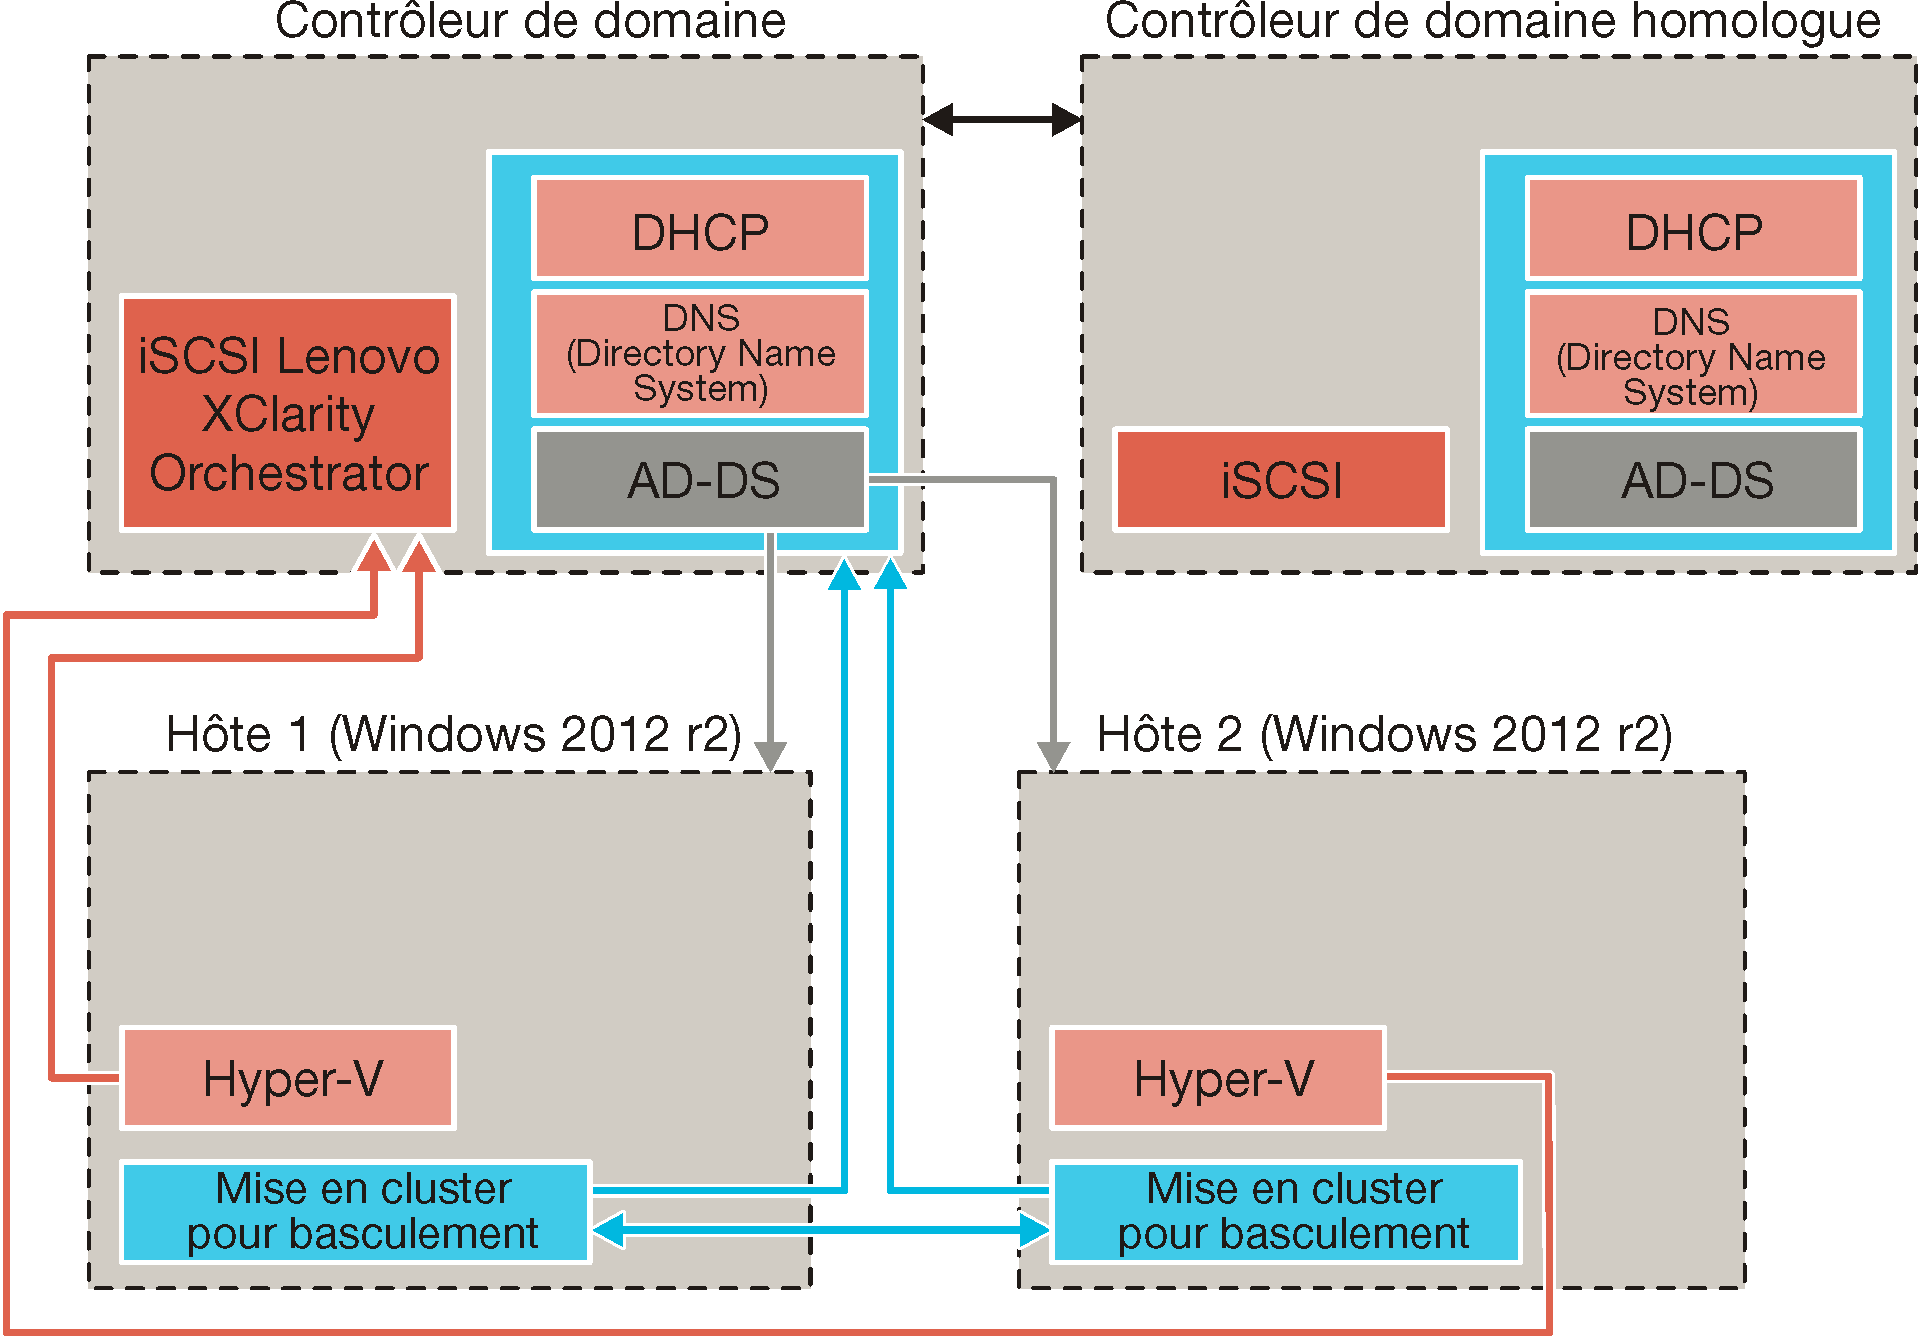 Illustre une configuration à haute disponibilité dans un environnement Hyper-V